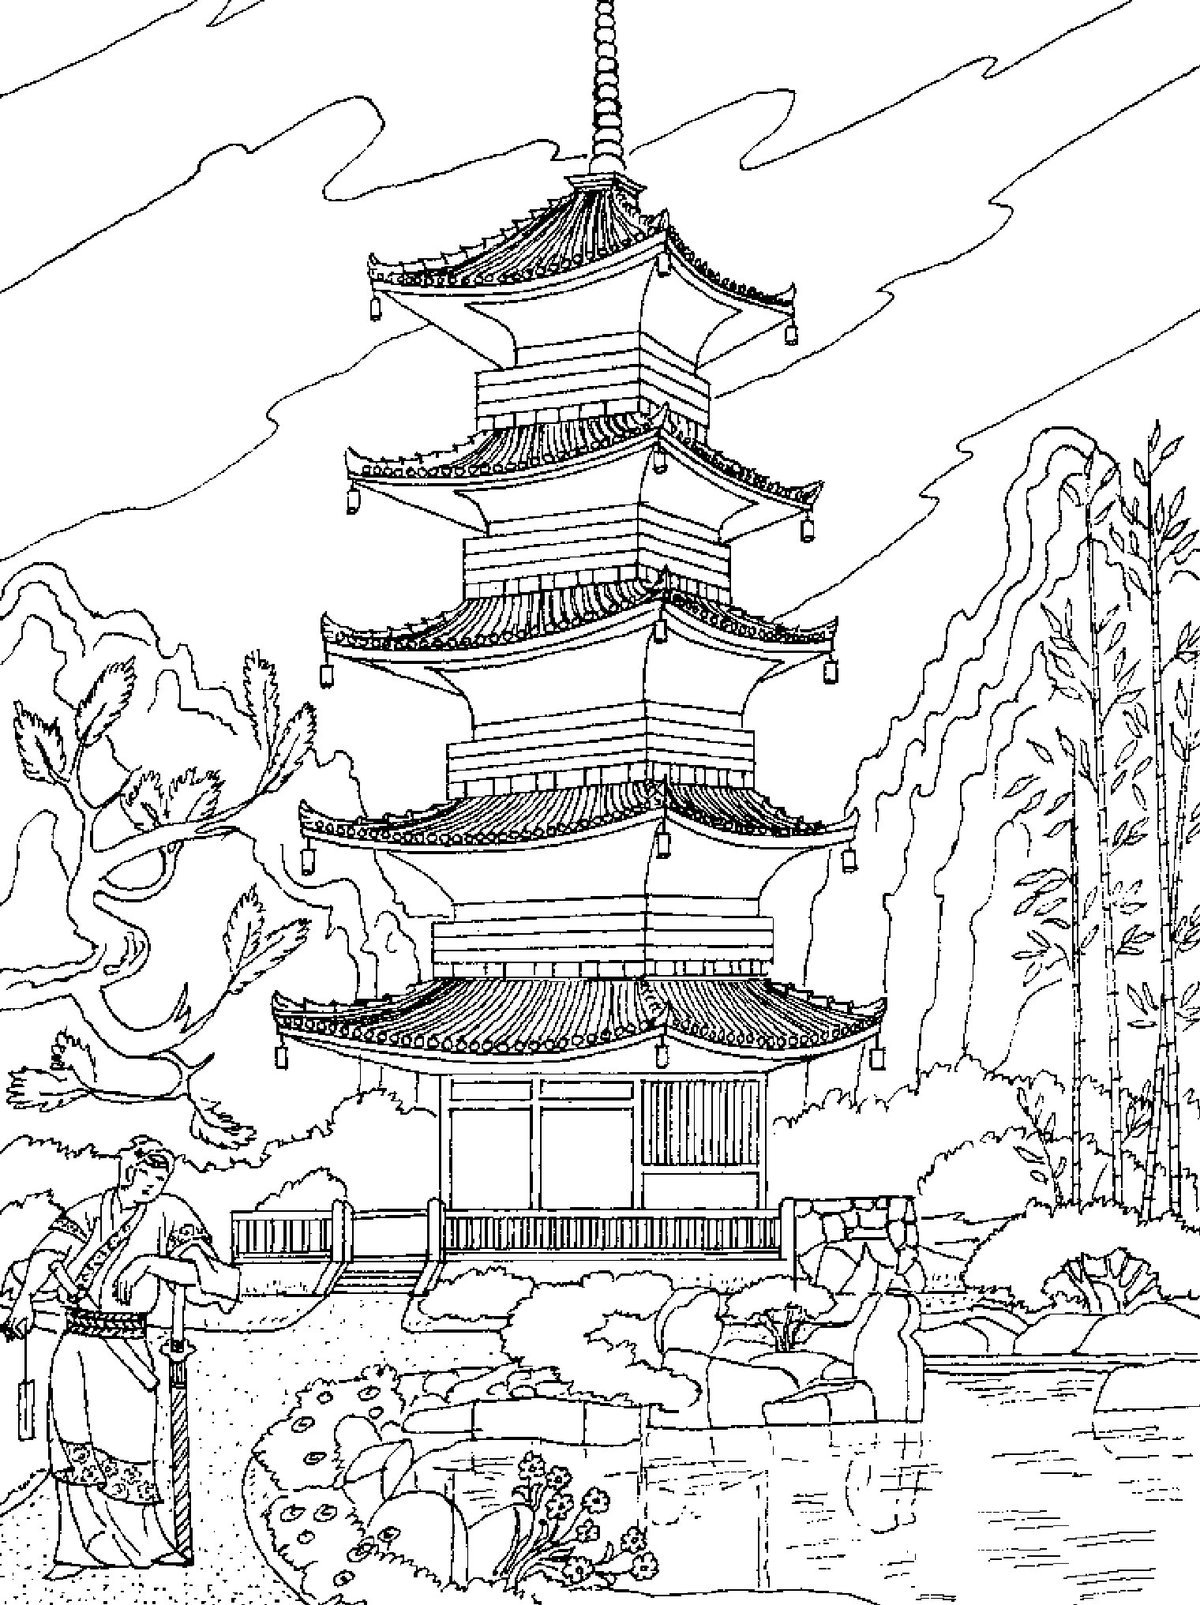 Иллюстрация буддистский храм в Японии